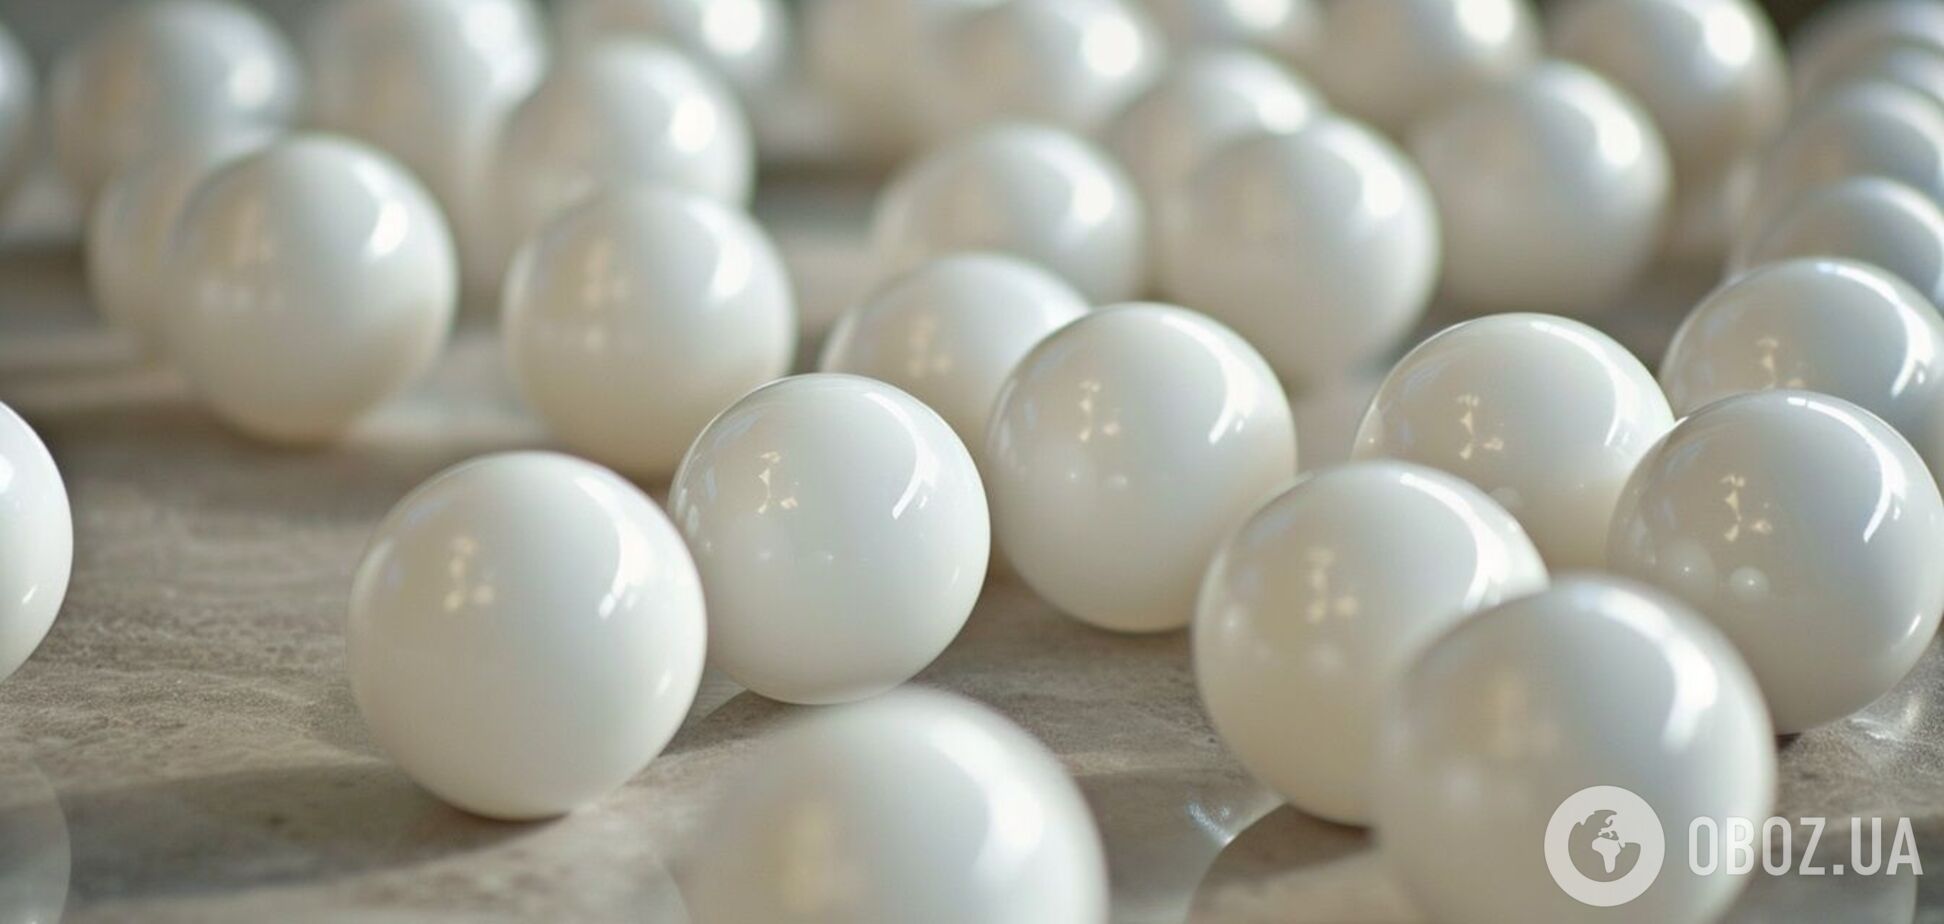 Найдите белые шарики: сложная головоломка, что тренирует зрение